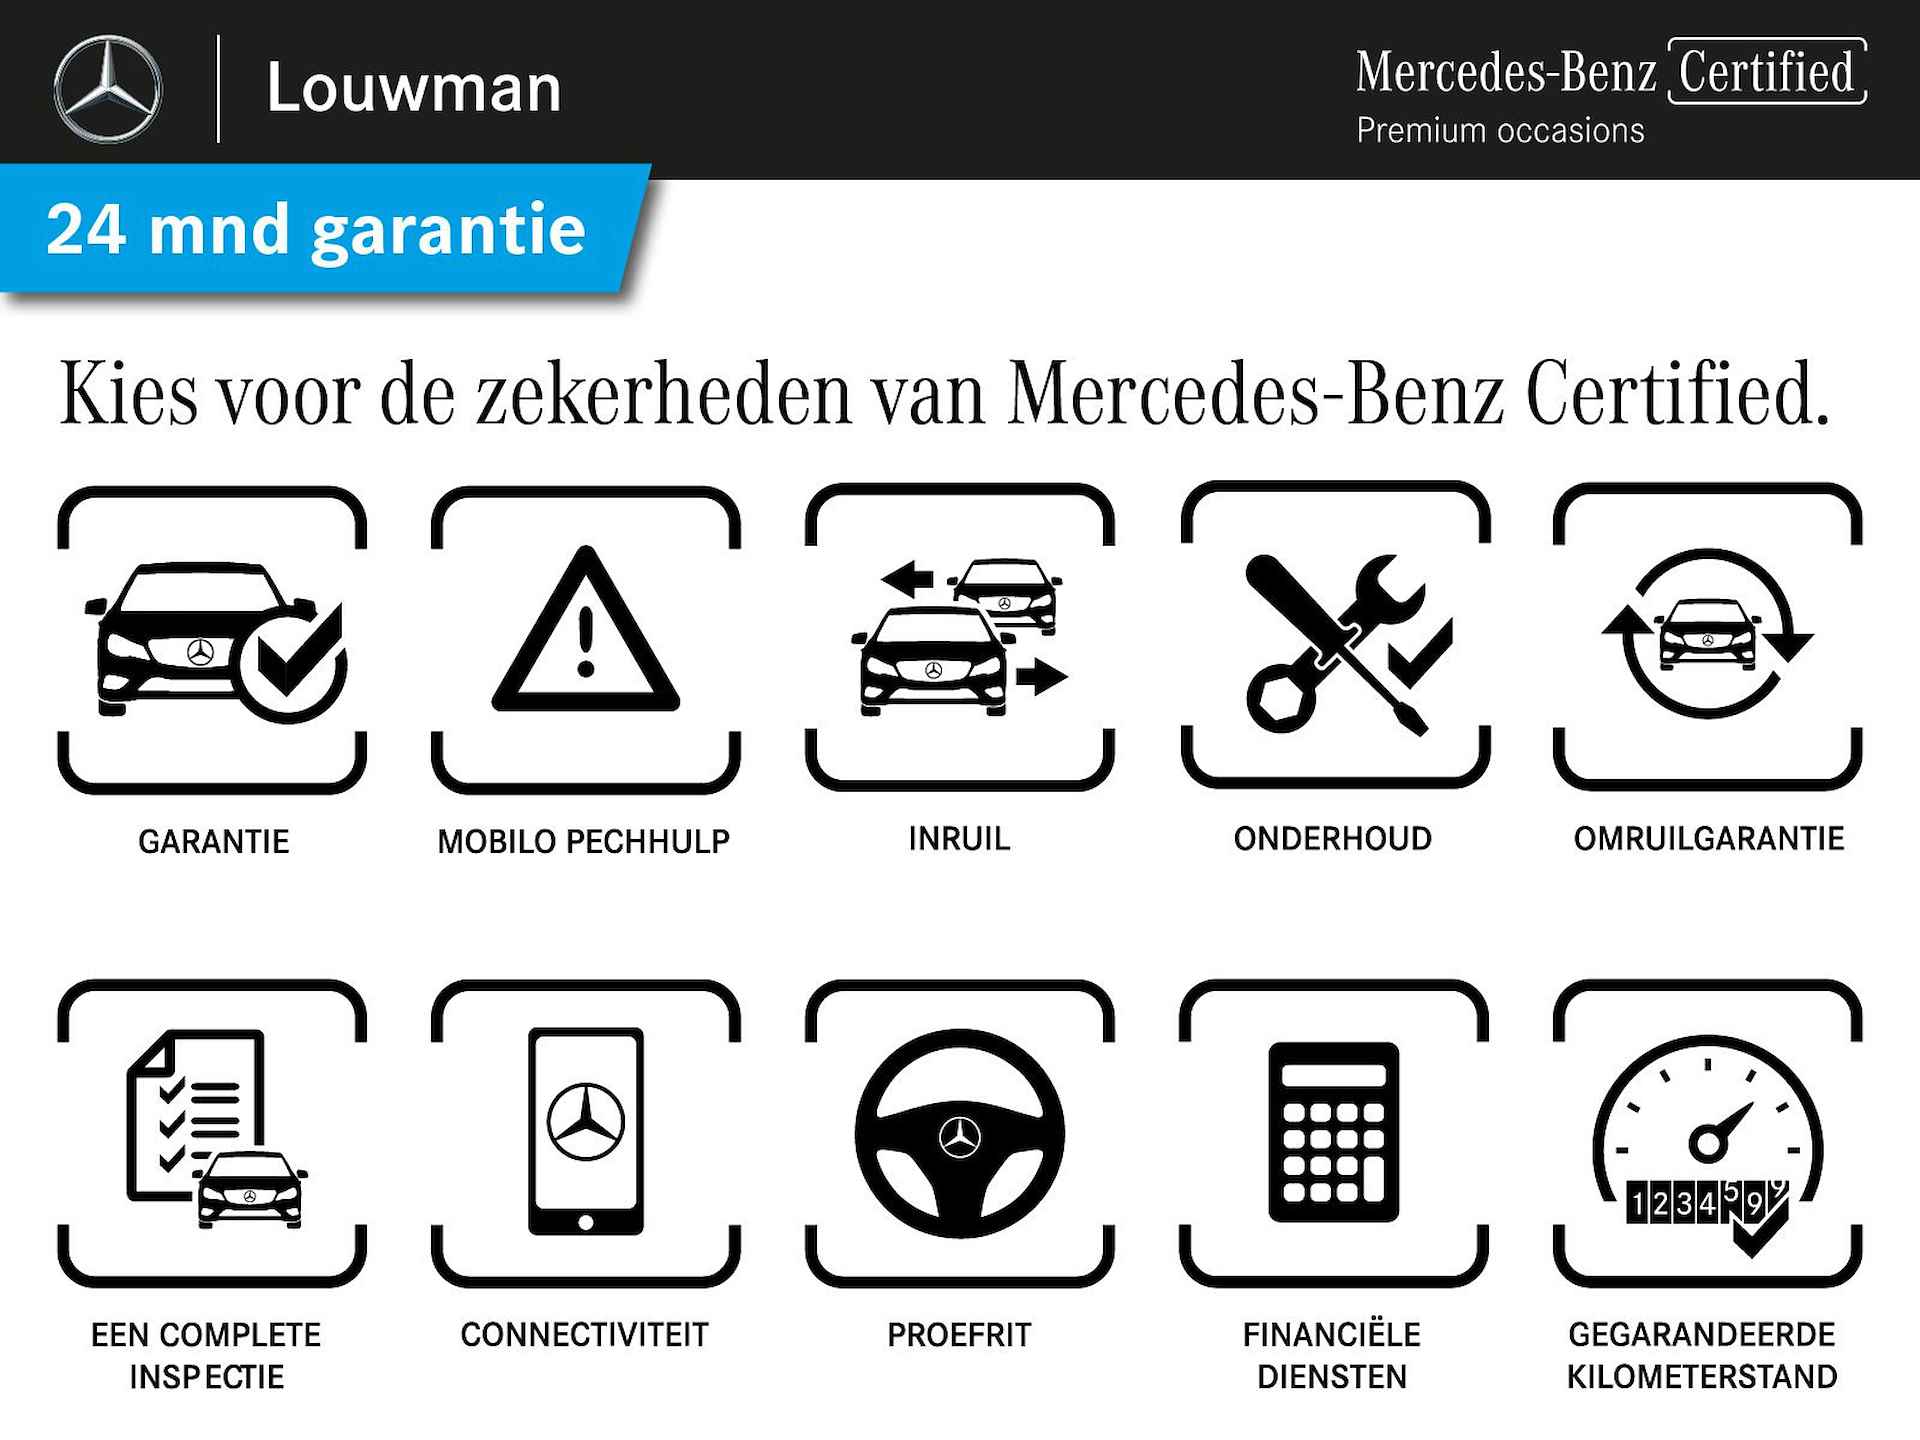 Mercedes-Benz A-Klasse 180 AMG | 5 spaaks lichtmetalenvelgen | MBUX wide screen | Navigatie | Camera | parking support | Inclusief 24 maanden Mercedes-Benz Certified garantie voor Europa. - 43/43